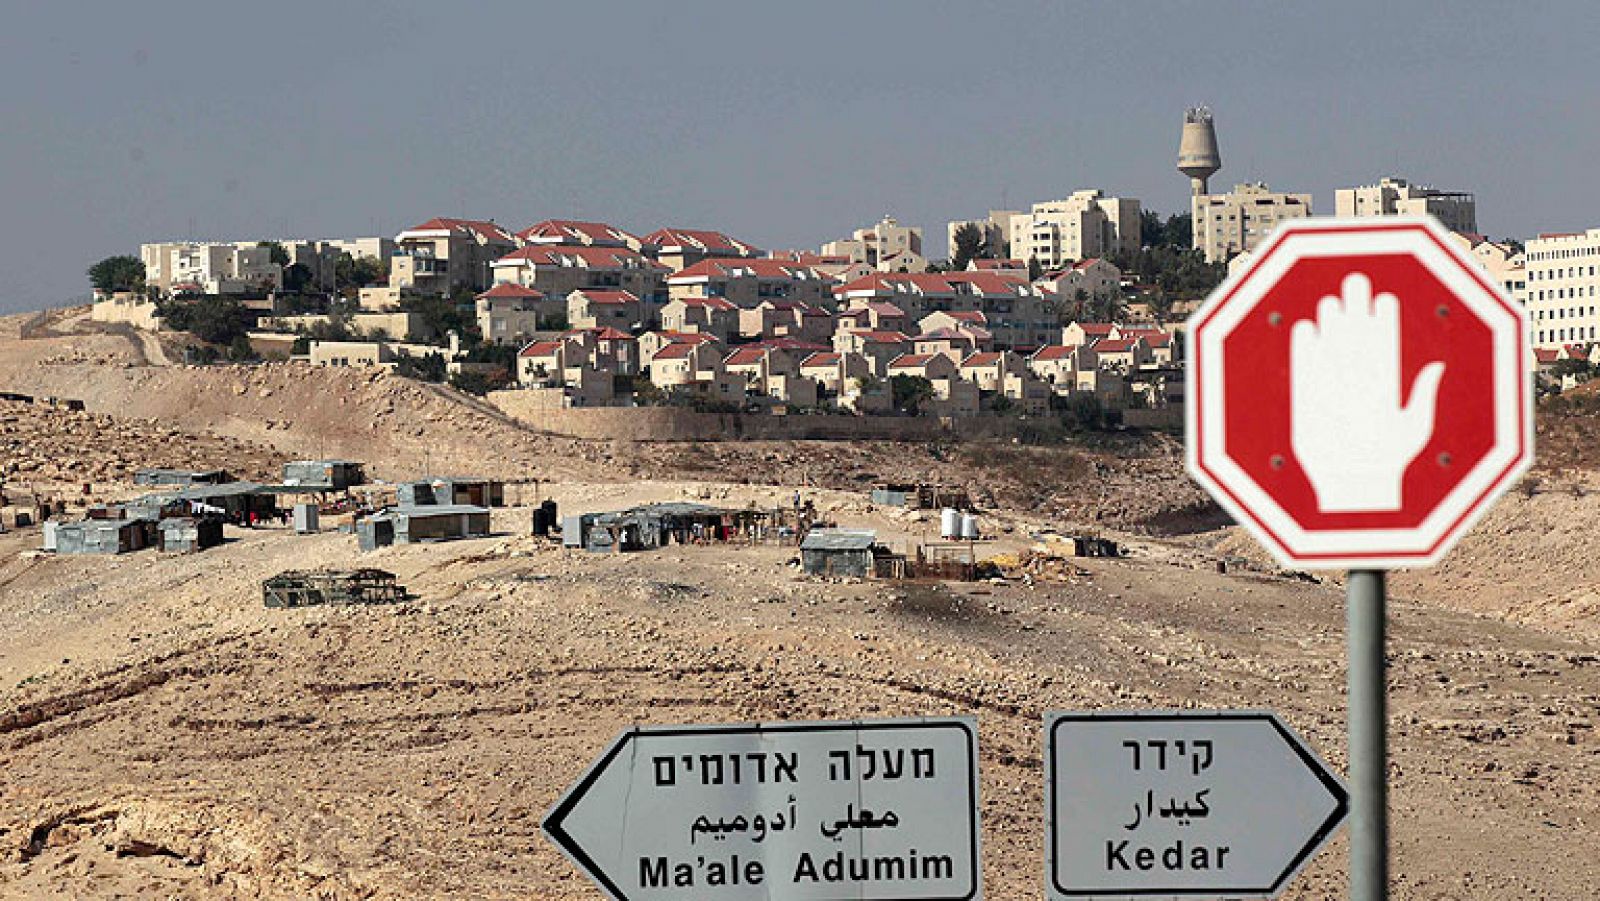  El primer ministro israelí, Benjamín Netanyahu, se ha visto obligado a frenar en seco los proyectos de ampliación de asentamientos de su gobierno. Israel planeaba sumar más de 20.000 nuevas viviendas y sólo el hecho de haberse sabido ya ha afectado a las conversaciones de paz.